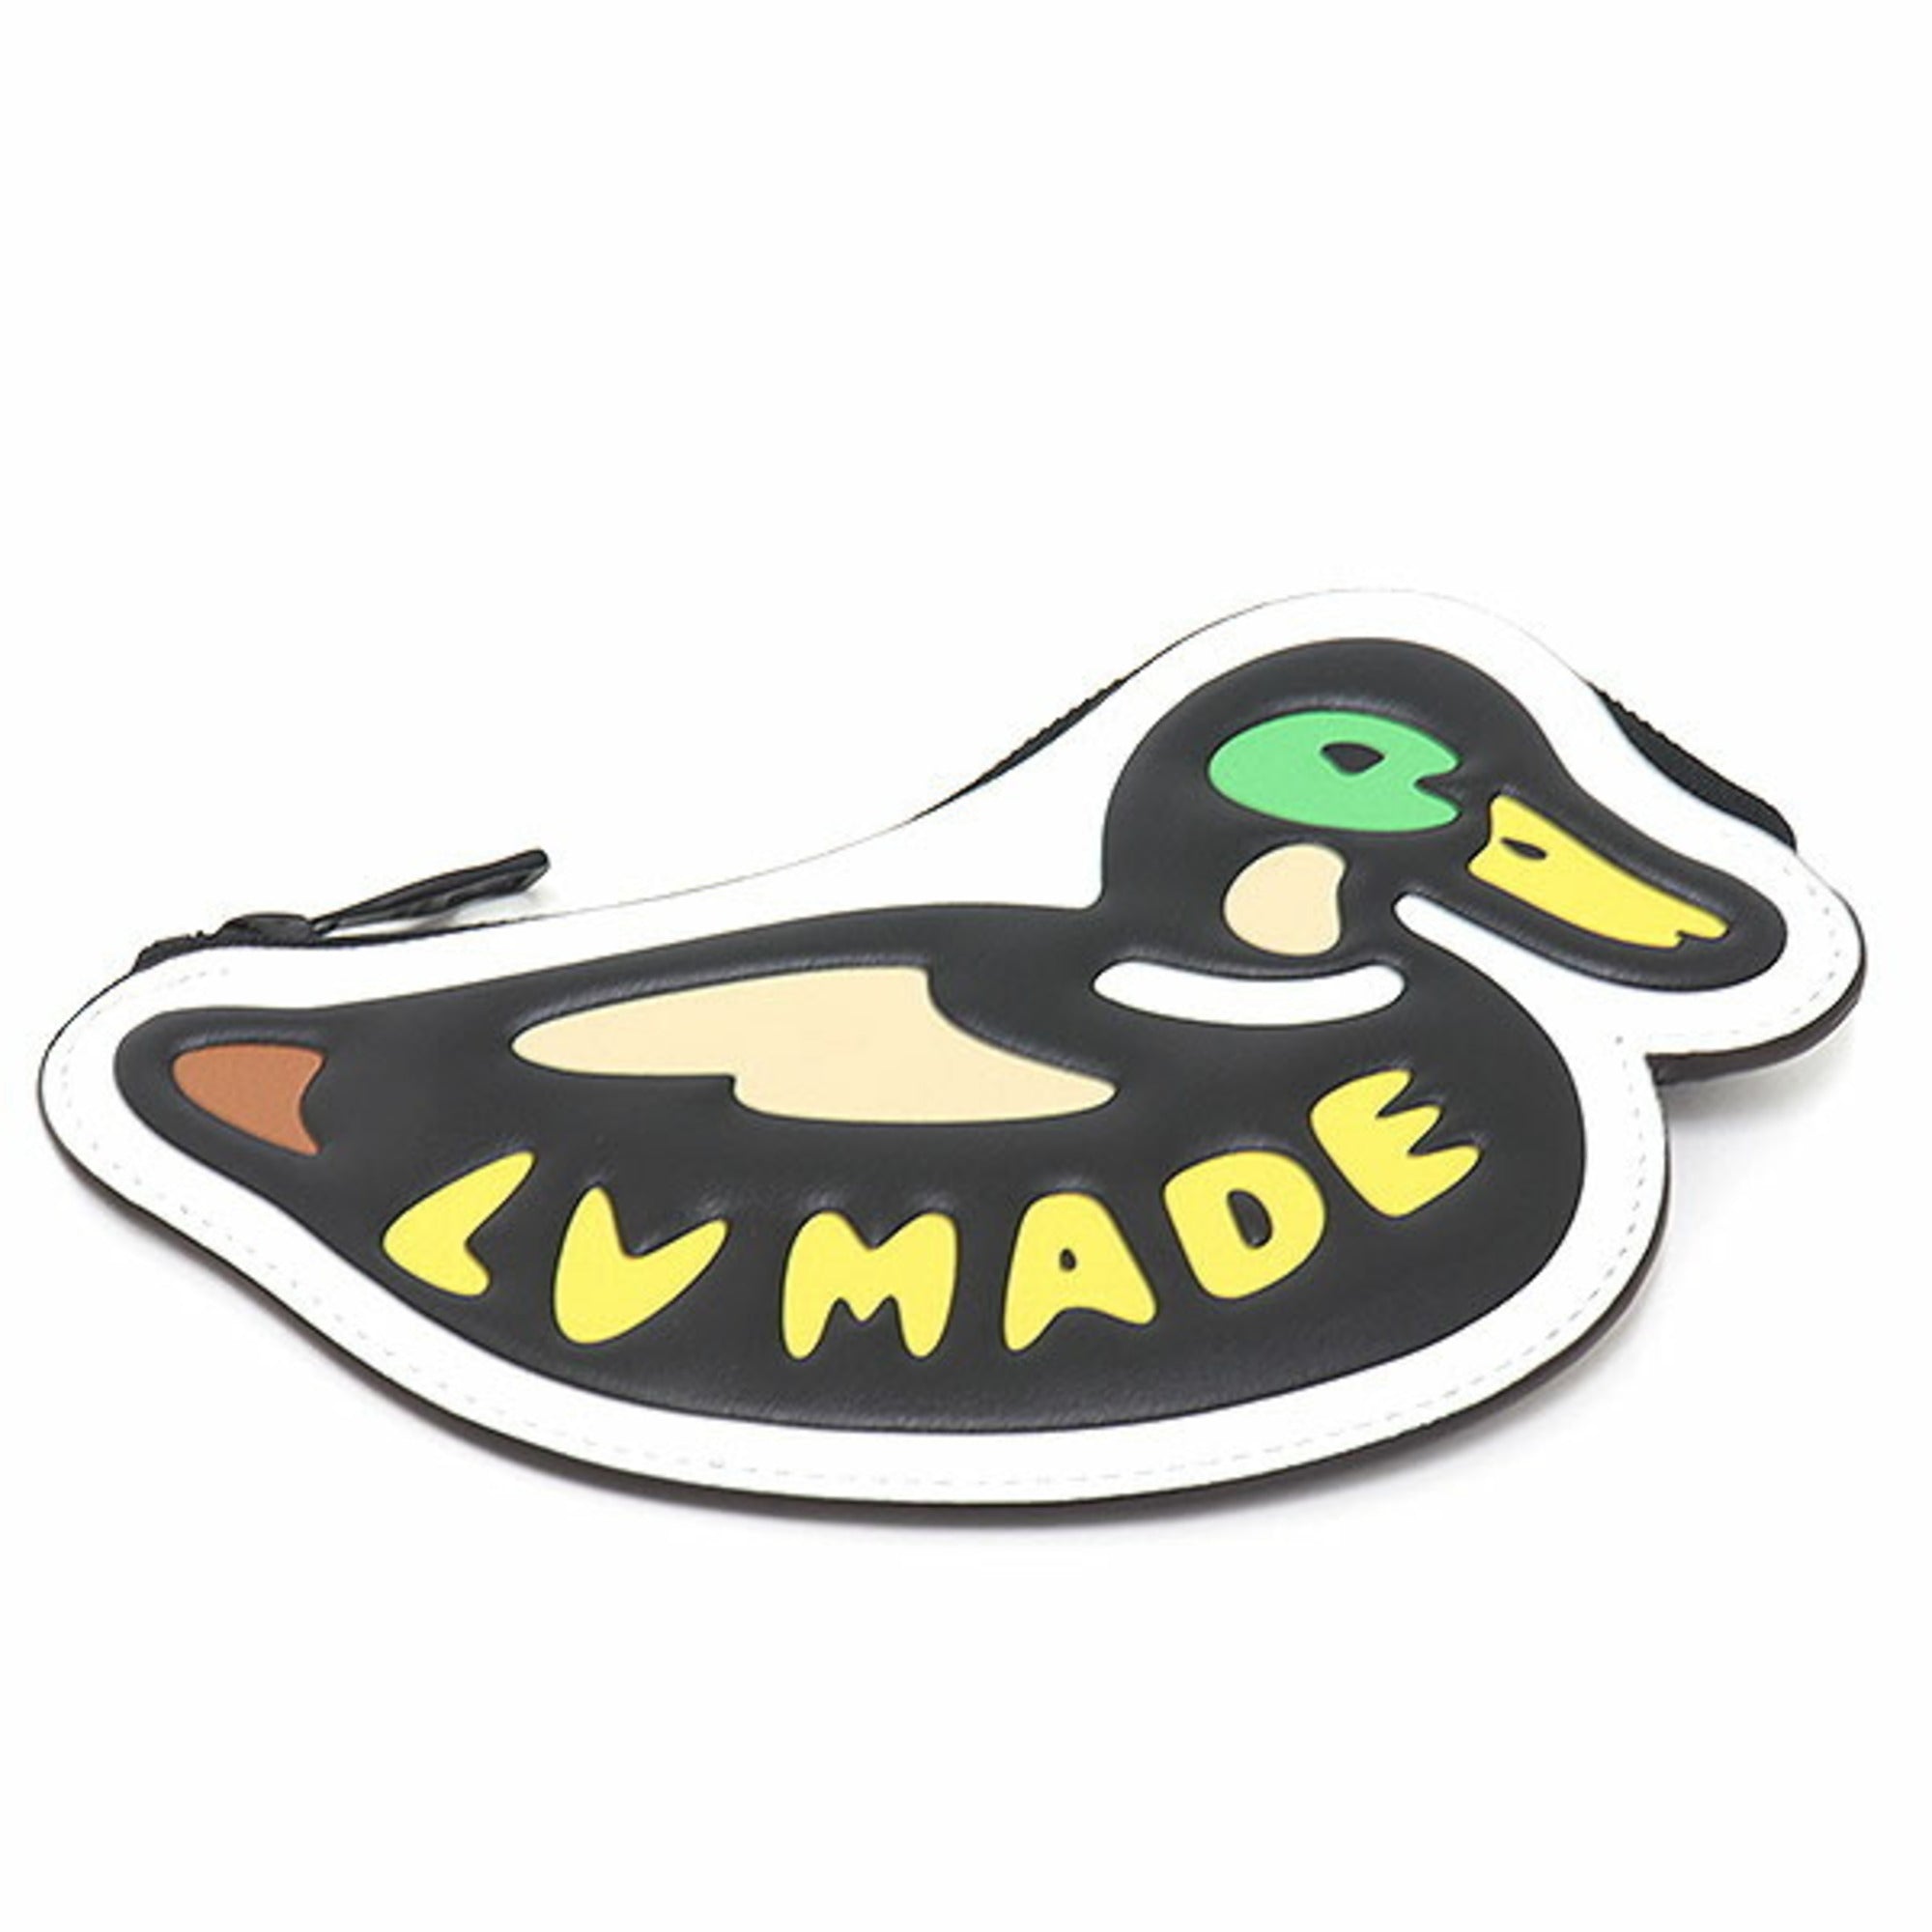 human made louis vuitton duck